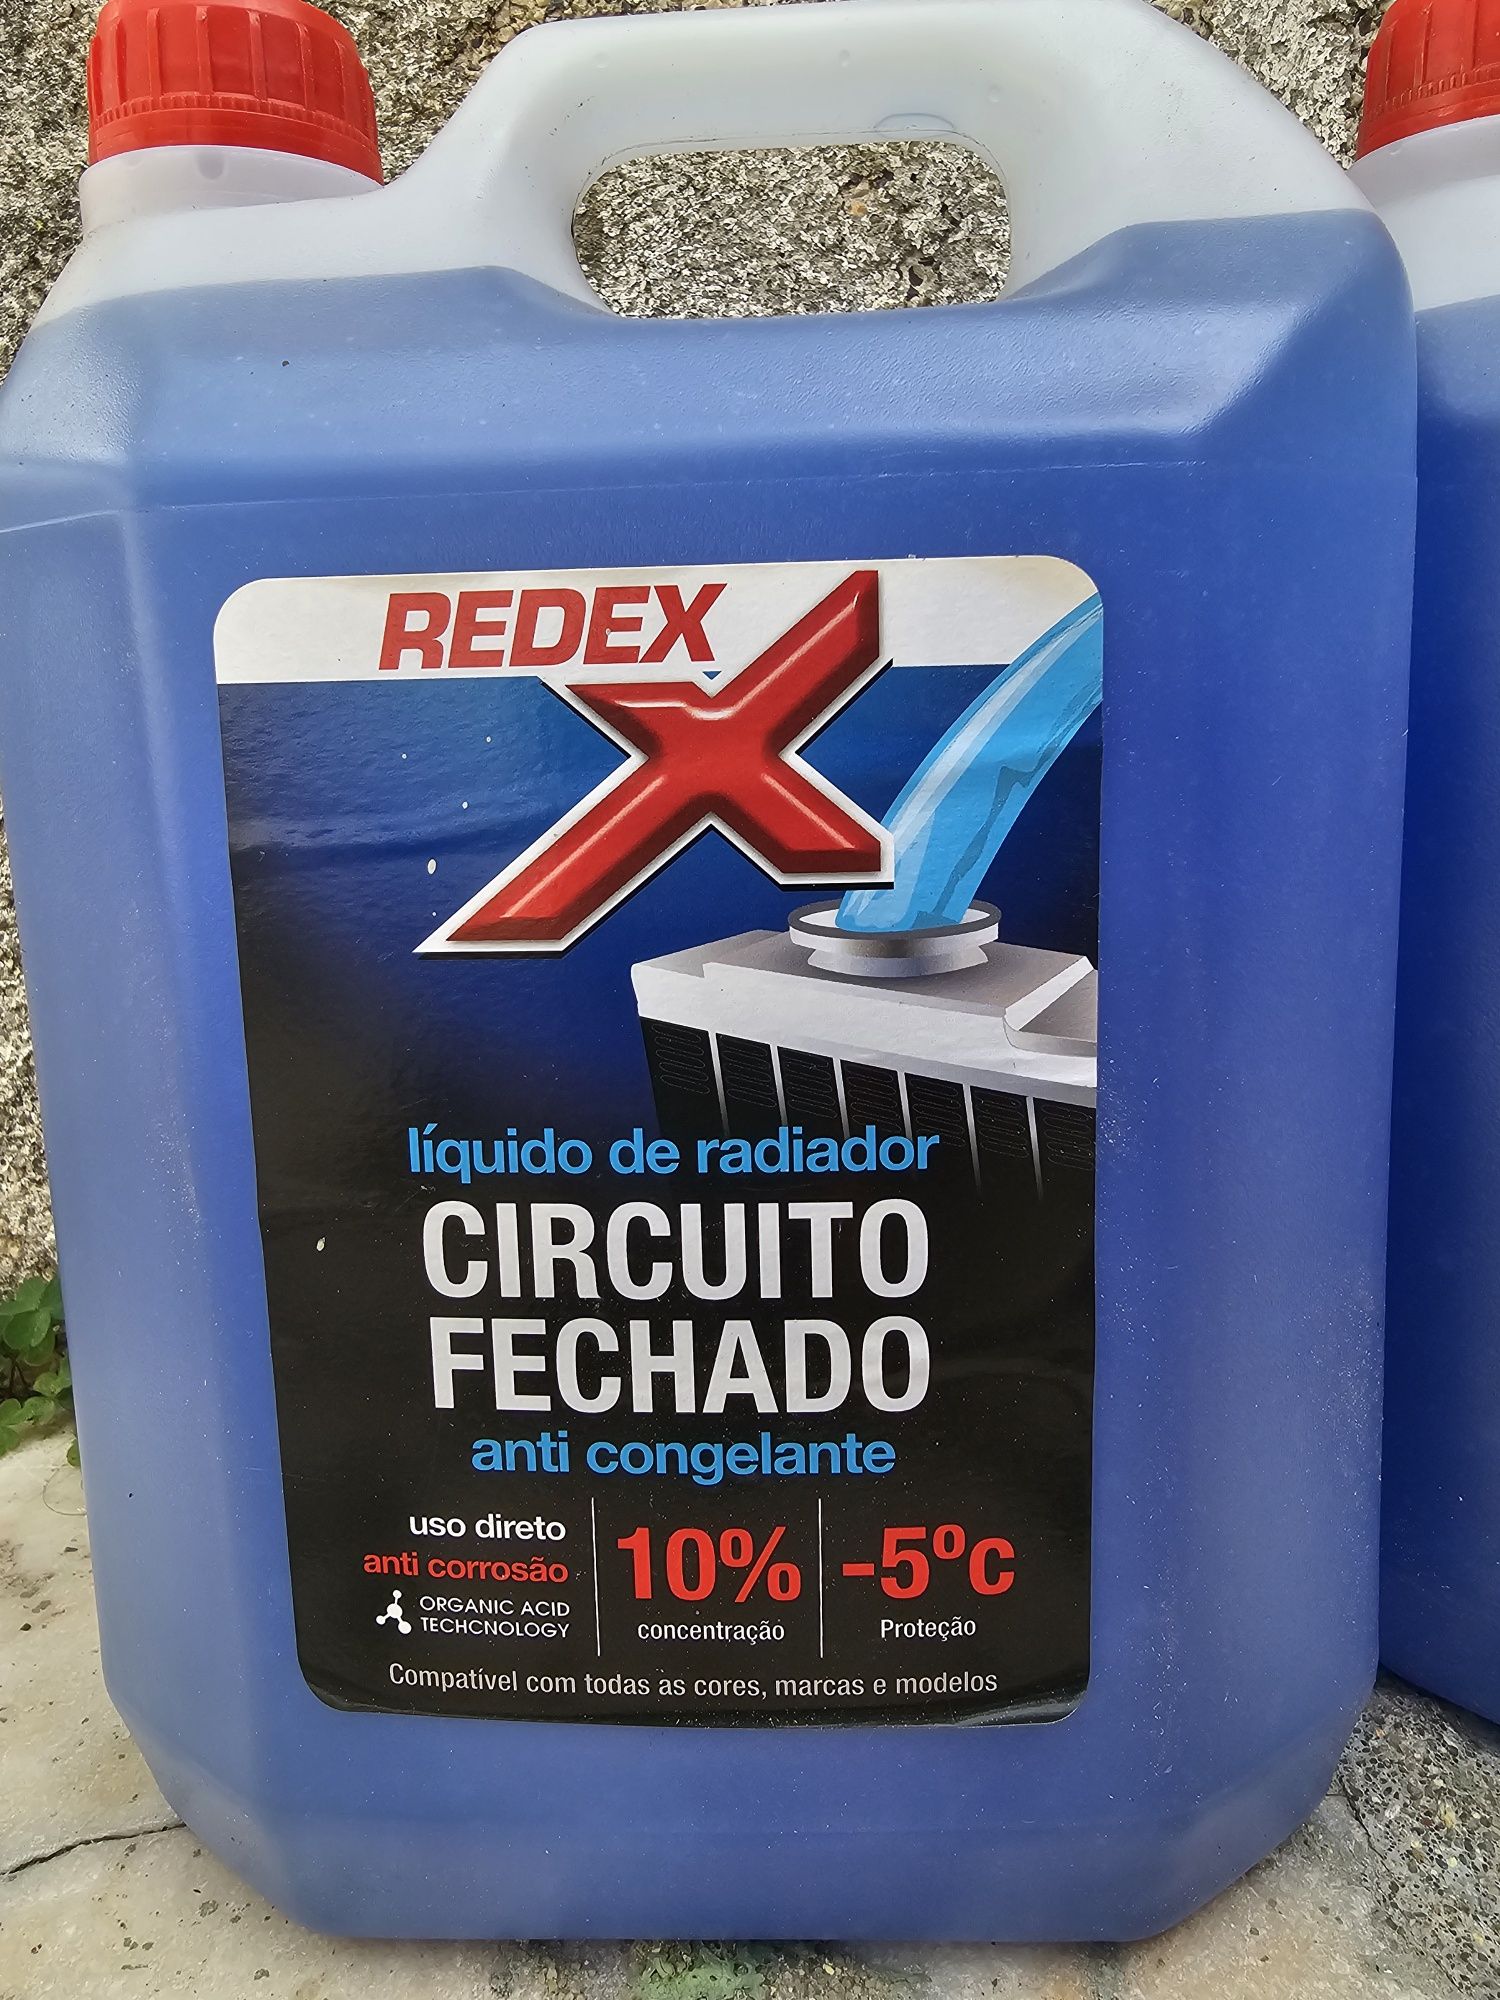 REDEX Líquido de Radiador (anti congelante)